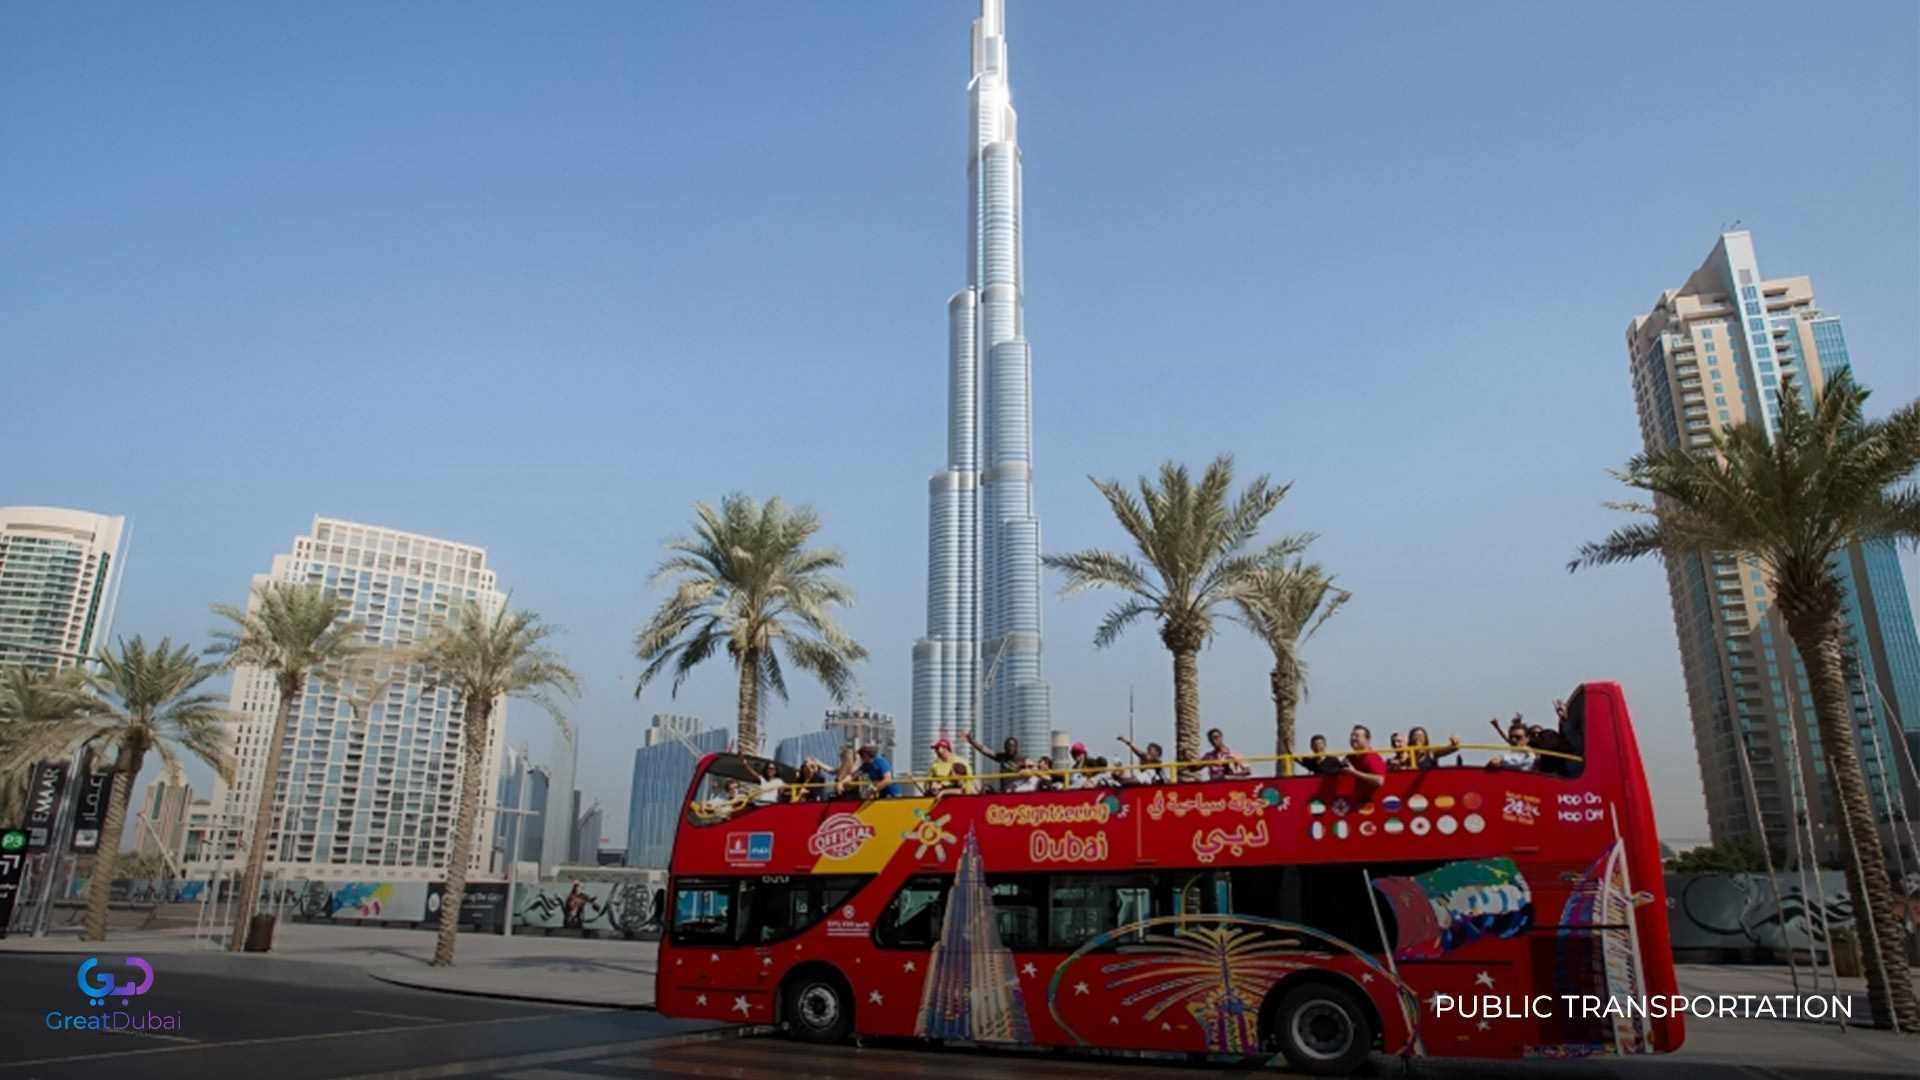 Bus Station by Burj Khalifa